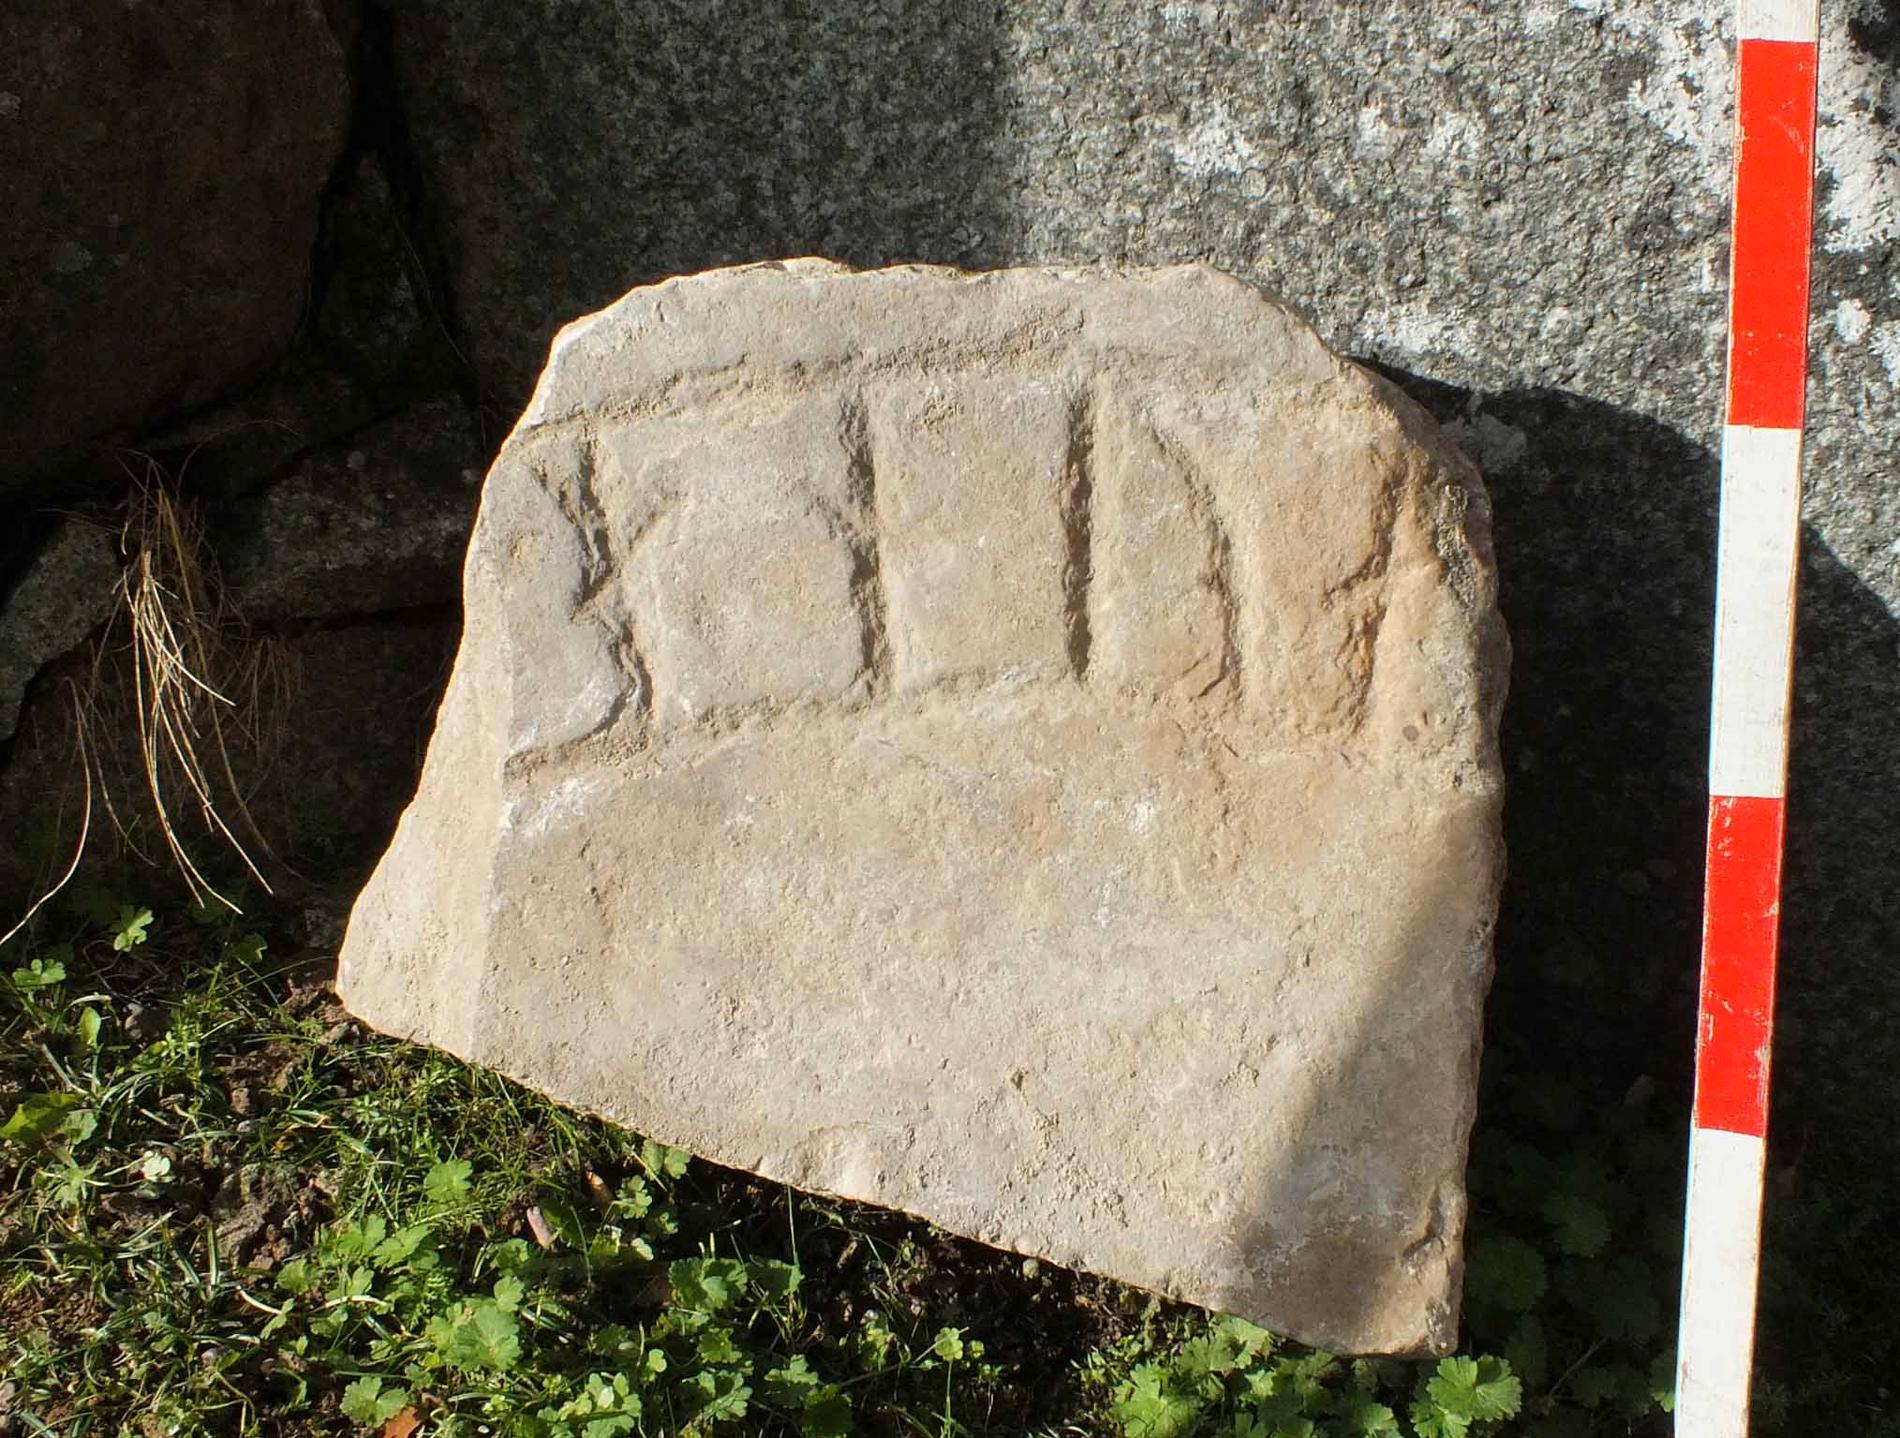 Ett av fynden är ett runstensfragment av kalksten som låg i en mur.